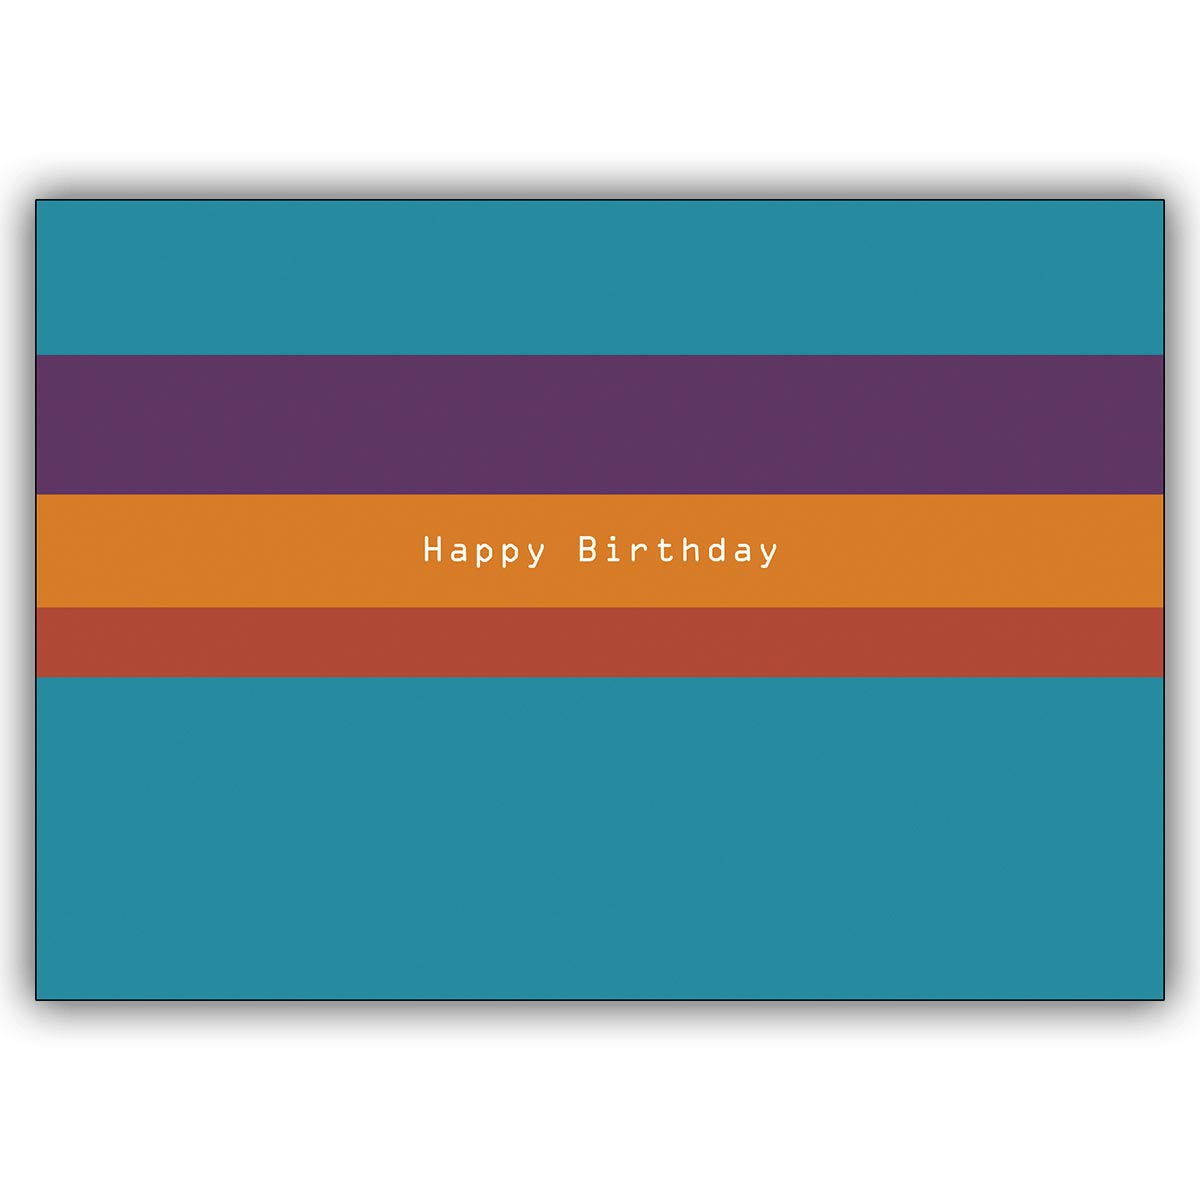 Coole "Happy Birthday" Glückwunschkarte zum Geburtstag